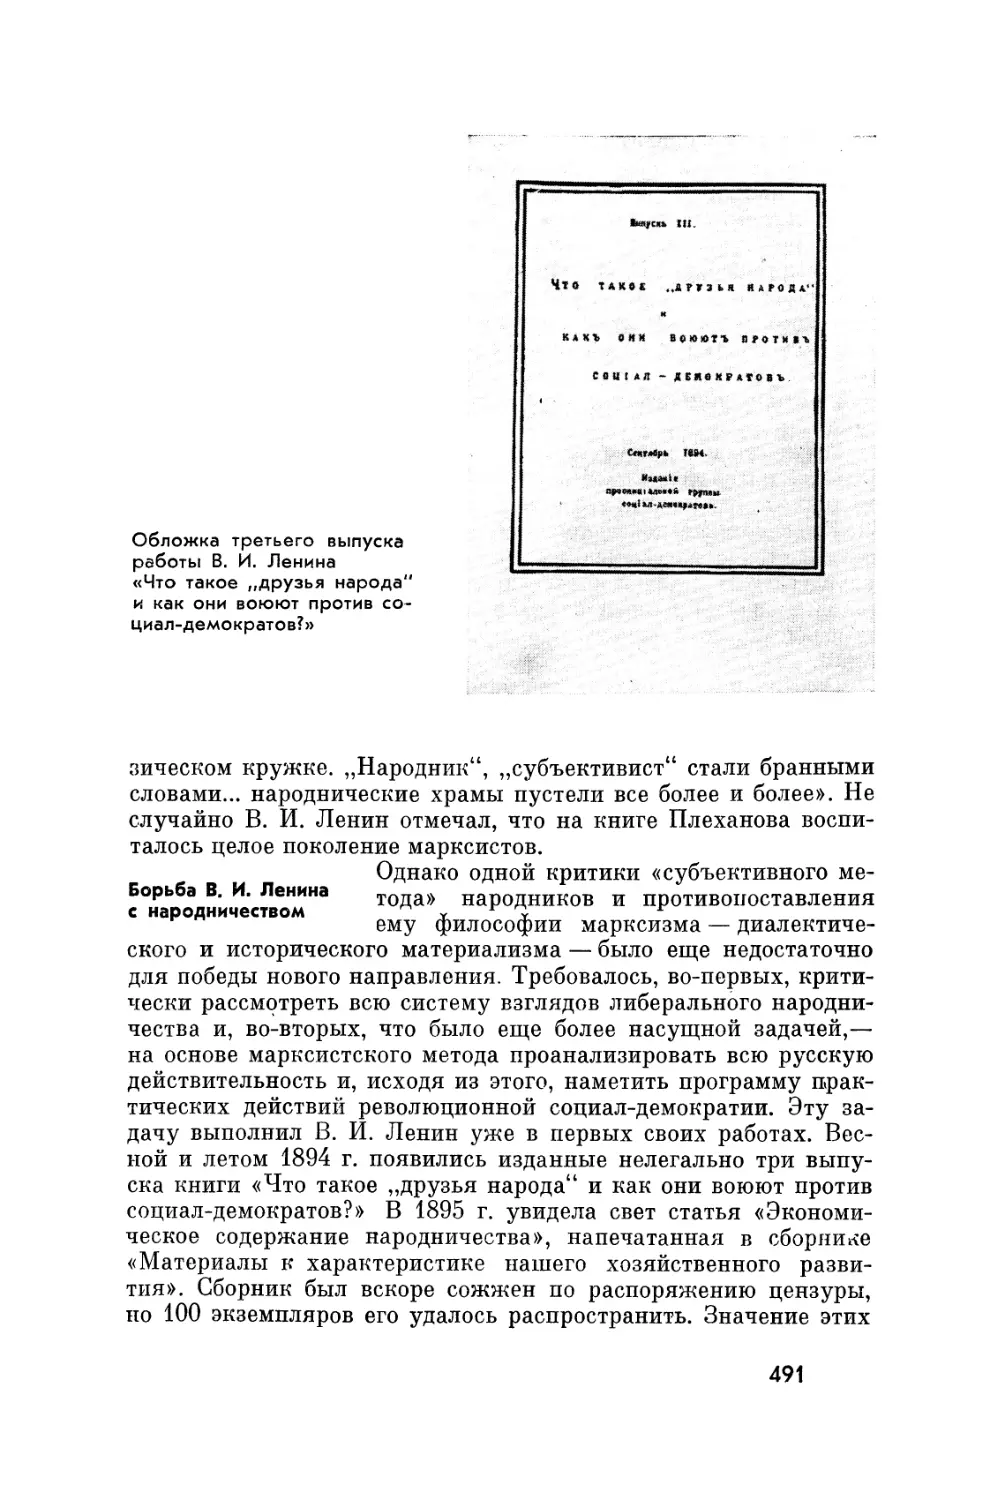 Борьба В. И. Ленина с народничеством